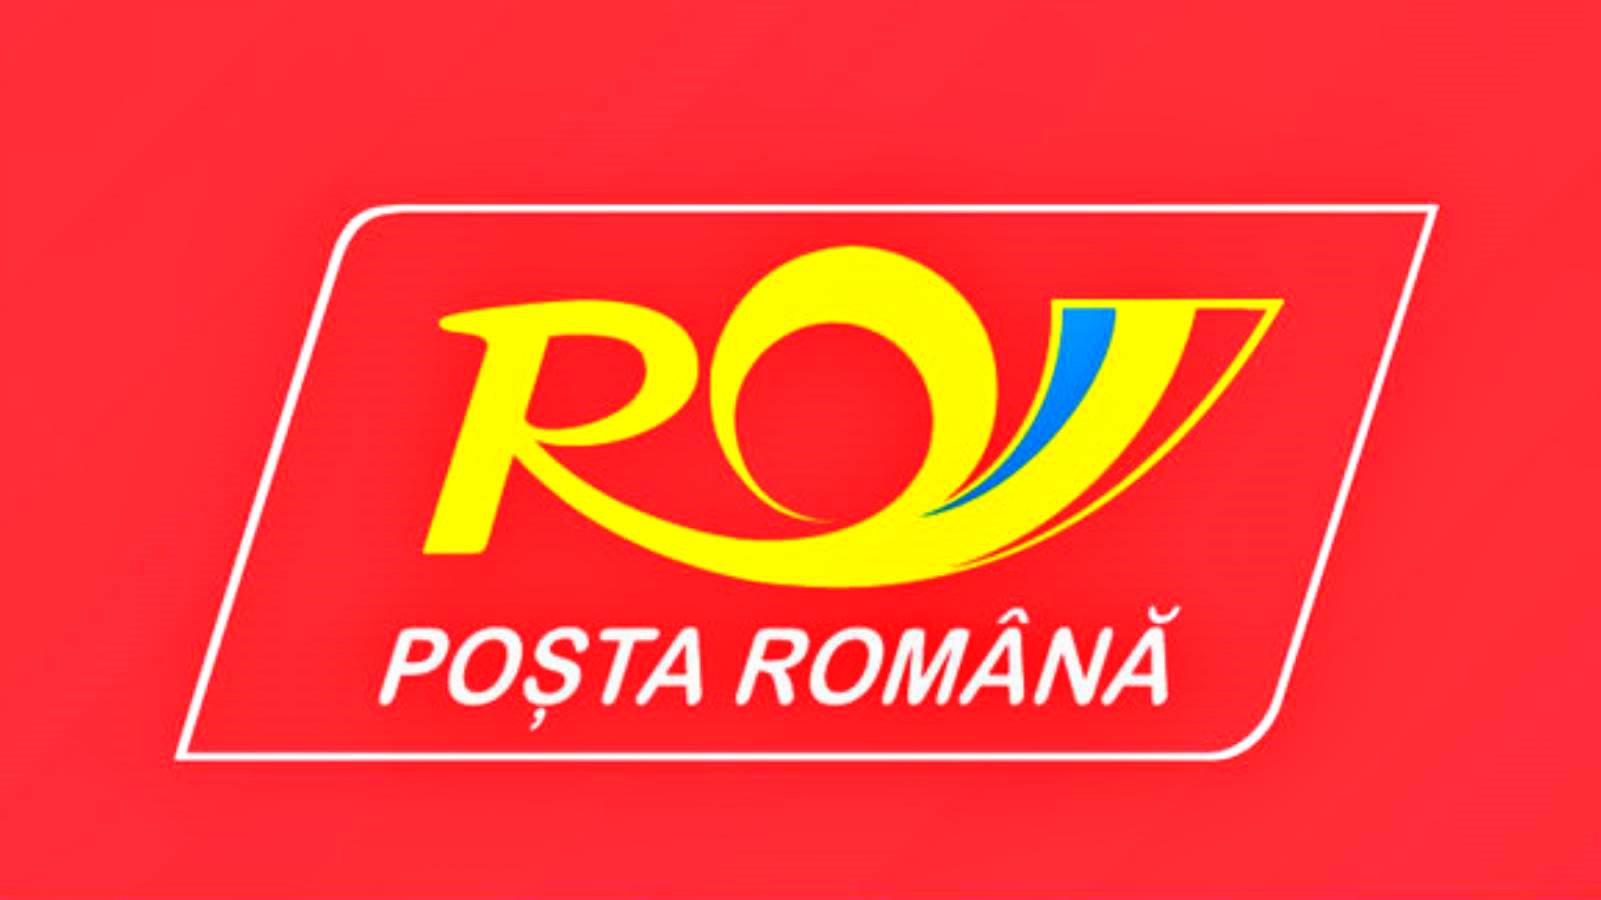 Officiële lijst van Roemeense post met verboden artikelen voor verzending